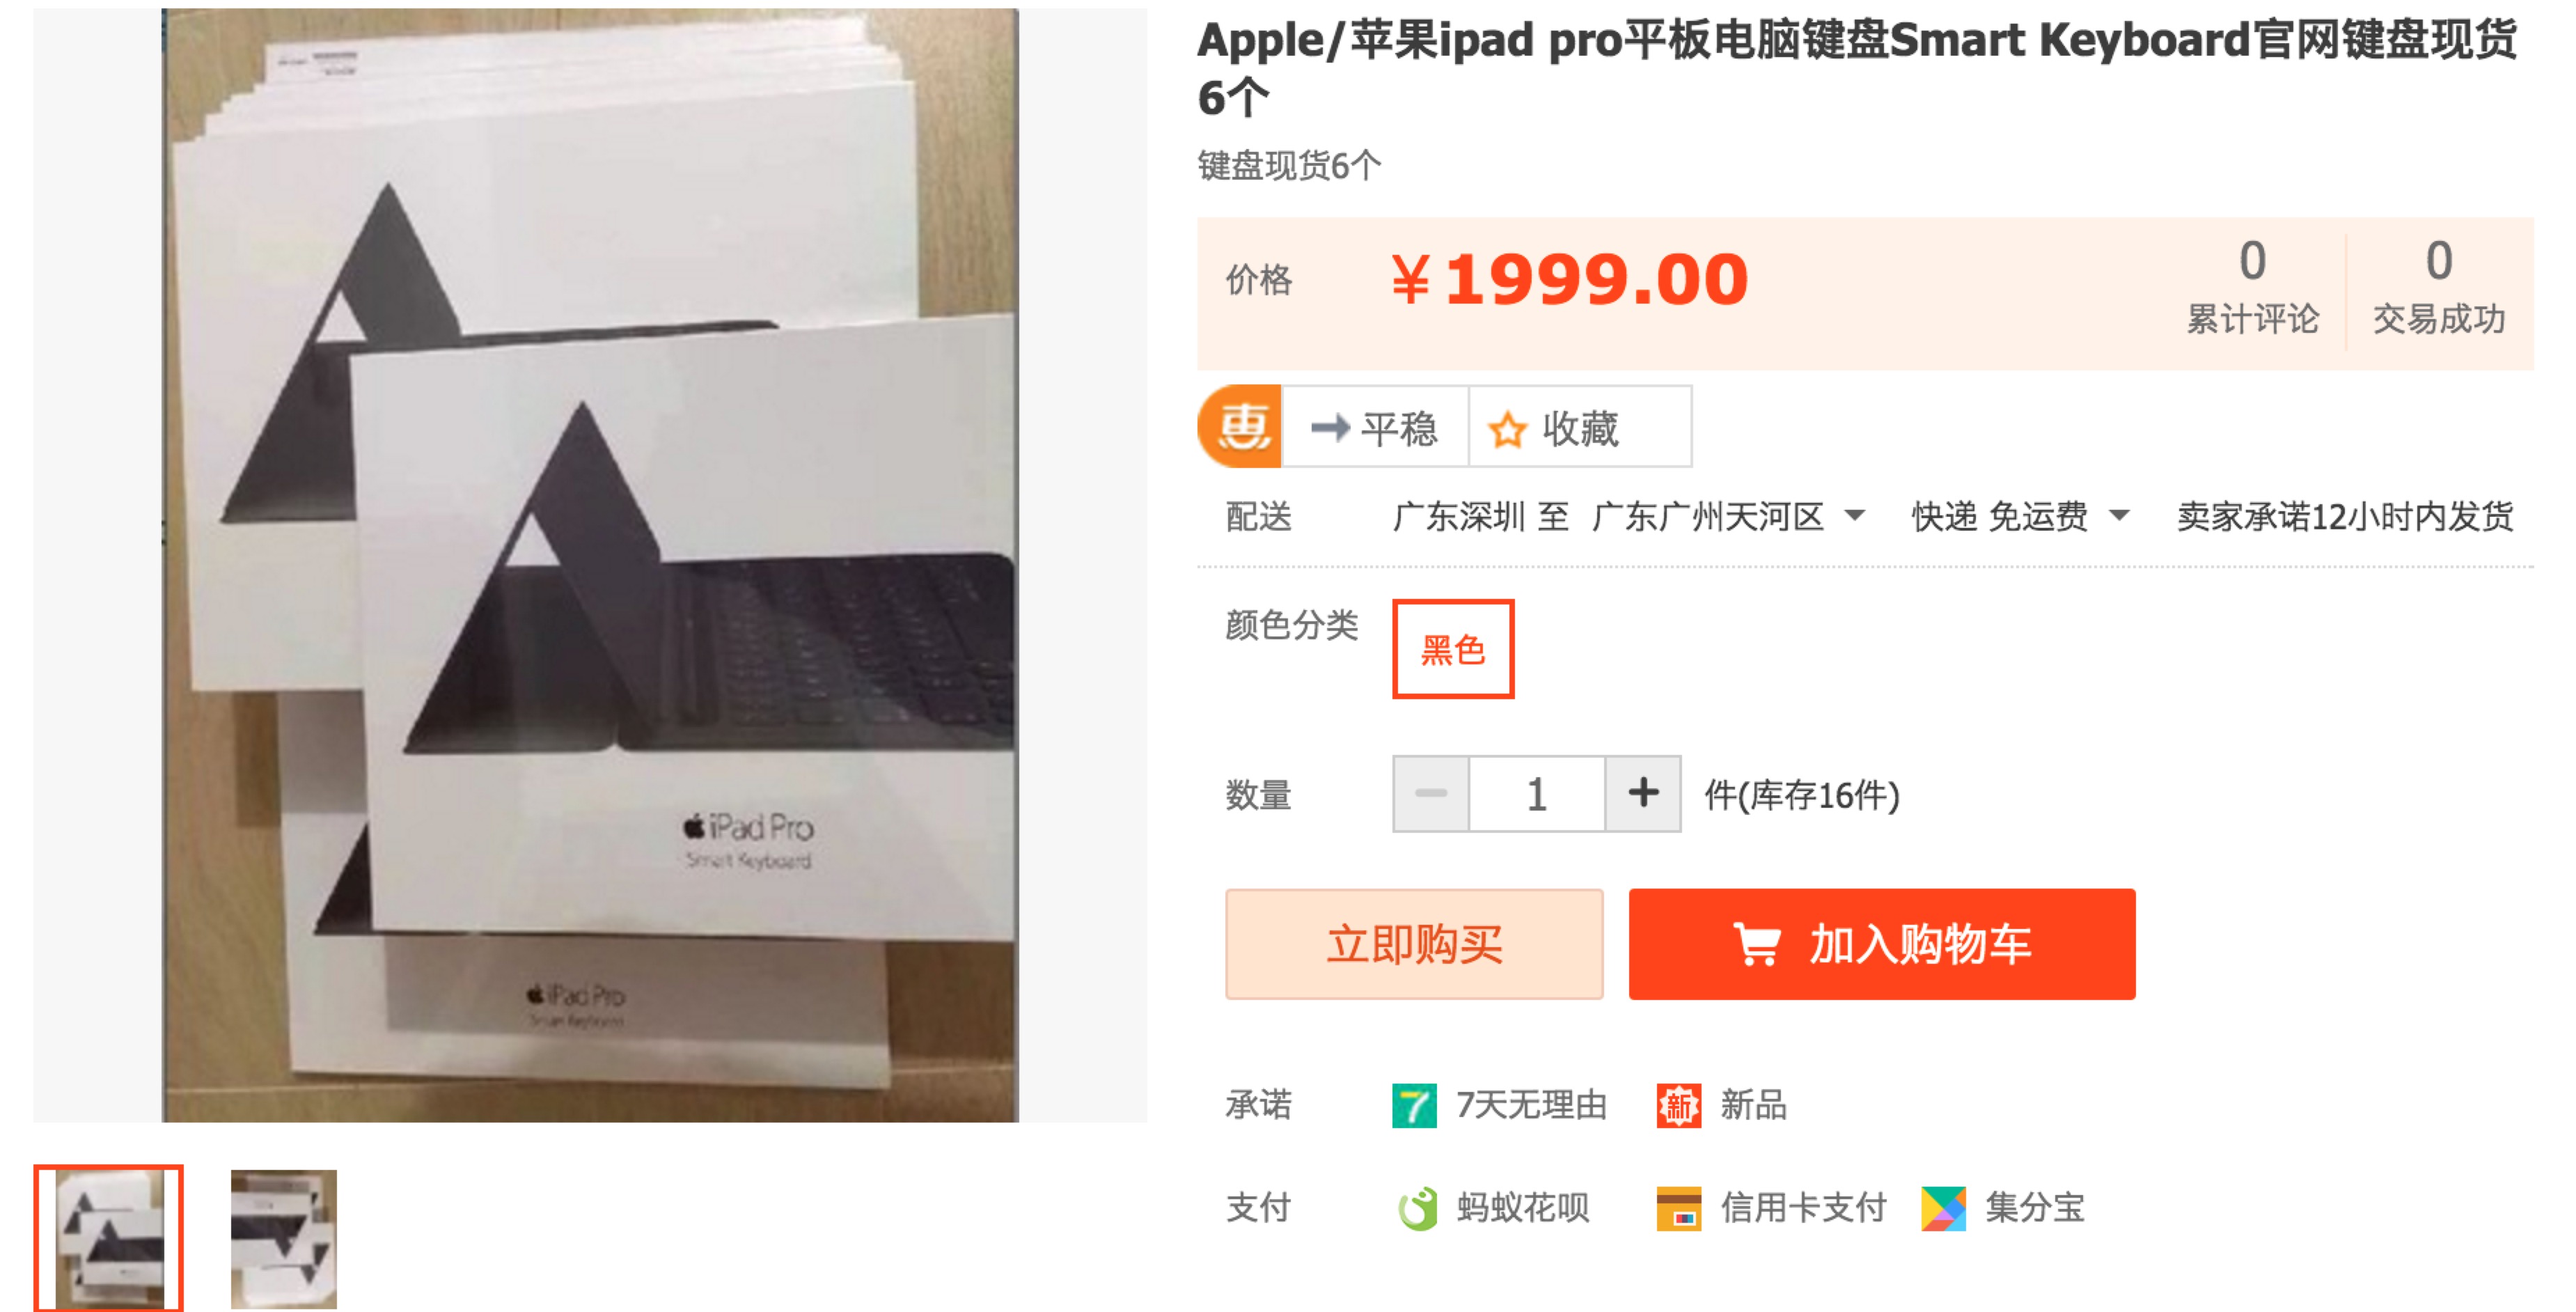 苹果付款支付宝方式被拒绝_苹果香港账号付款方式_谷歌香港创建付款账号